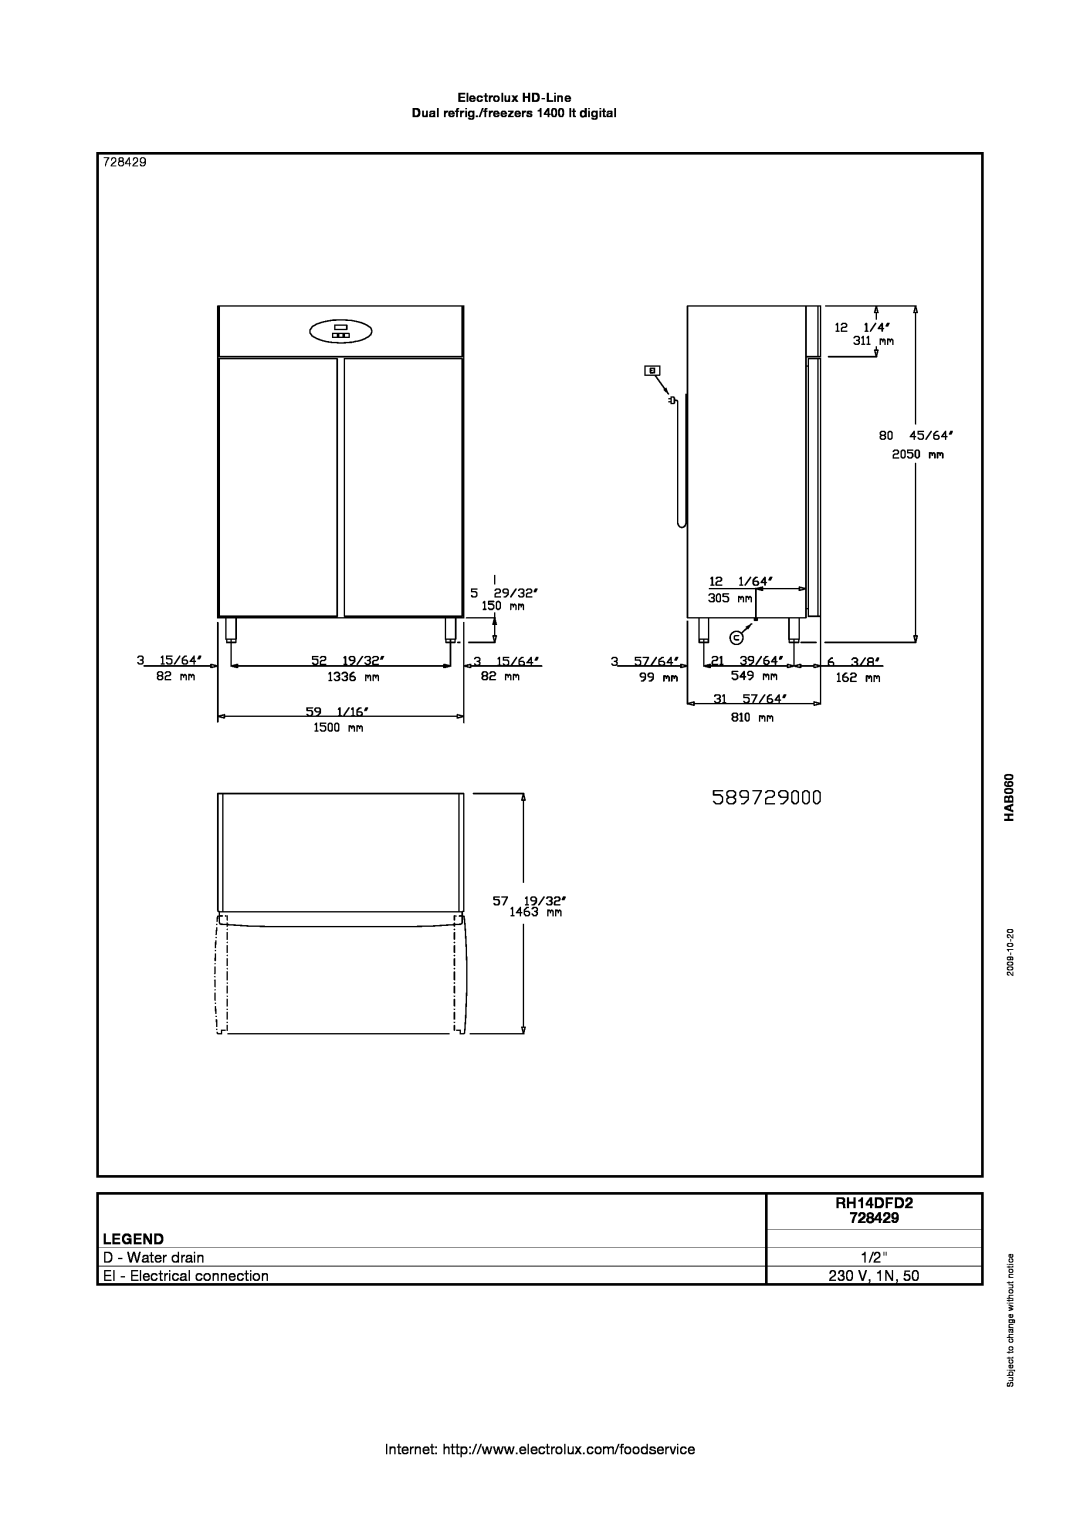 Electrolux RH14DFD2 manual 728429, Electrolux HD-Line Dual refrig./freezers 1400 lt digital, HAB060, 2009-10-20 